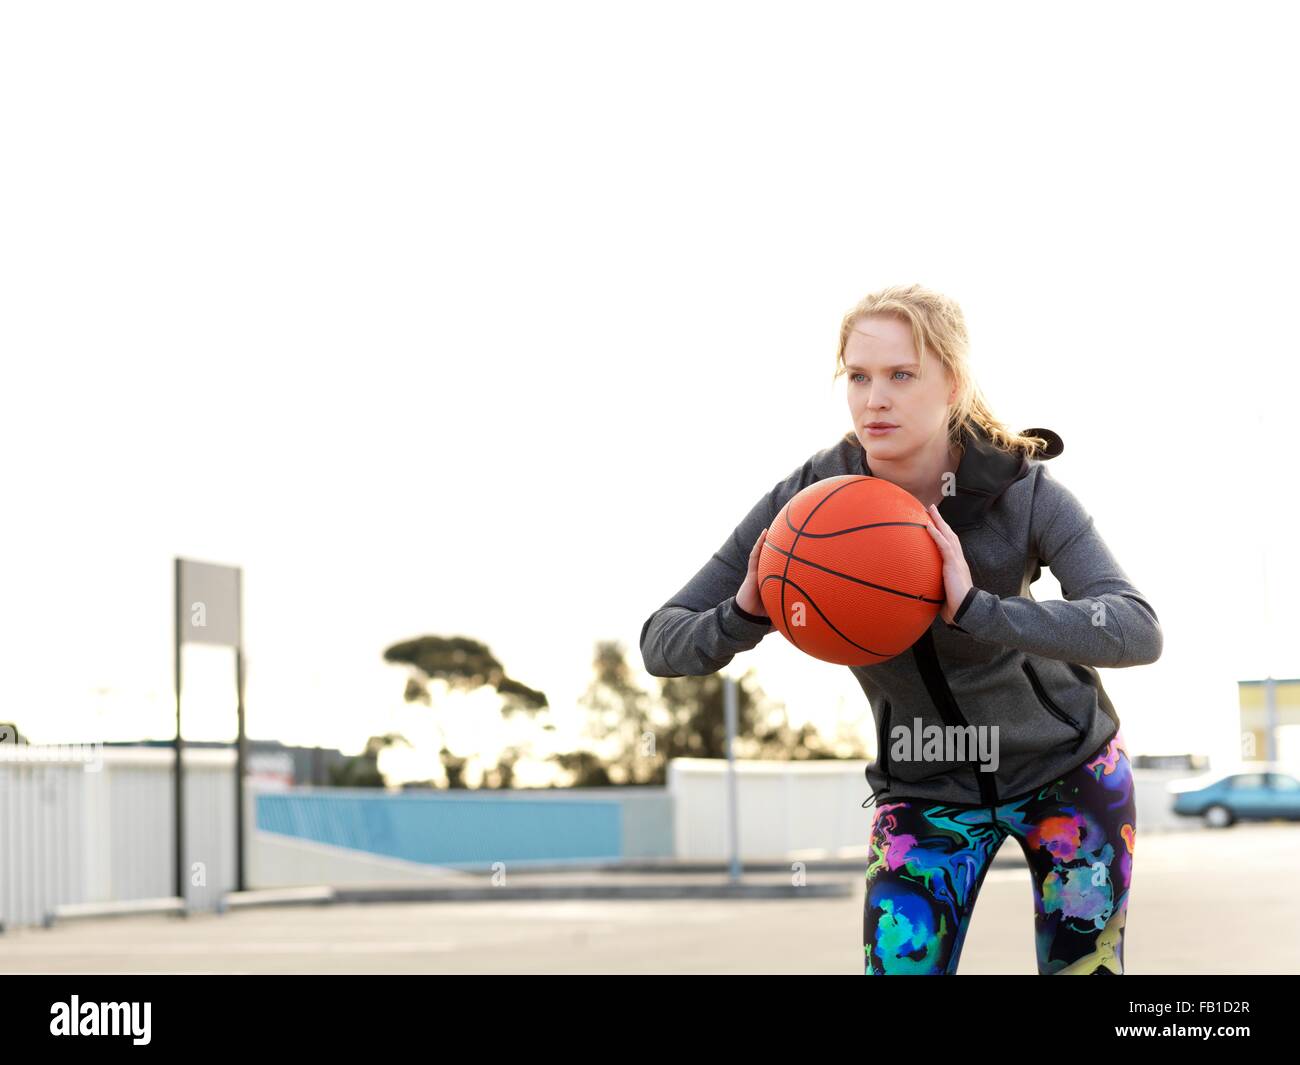 Retrato de joven jugador de baloncesto femenino practicando throw en estacionamiento Foto de stock